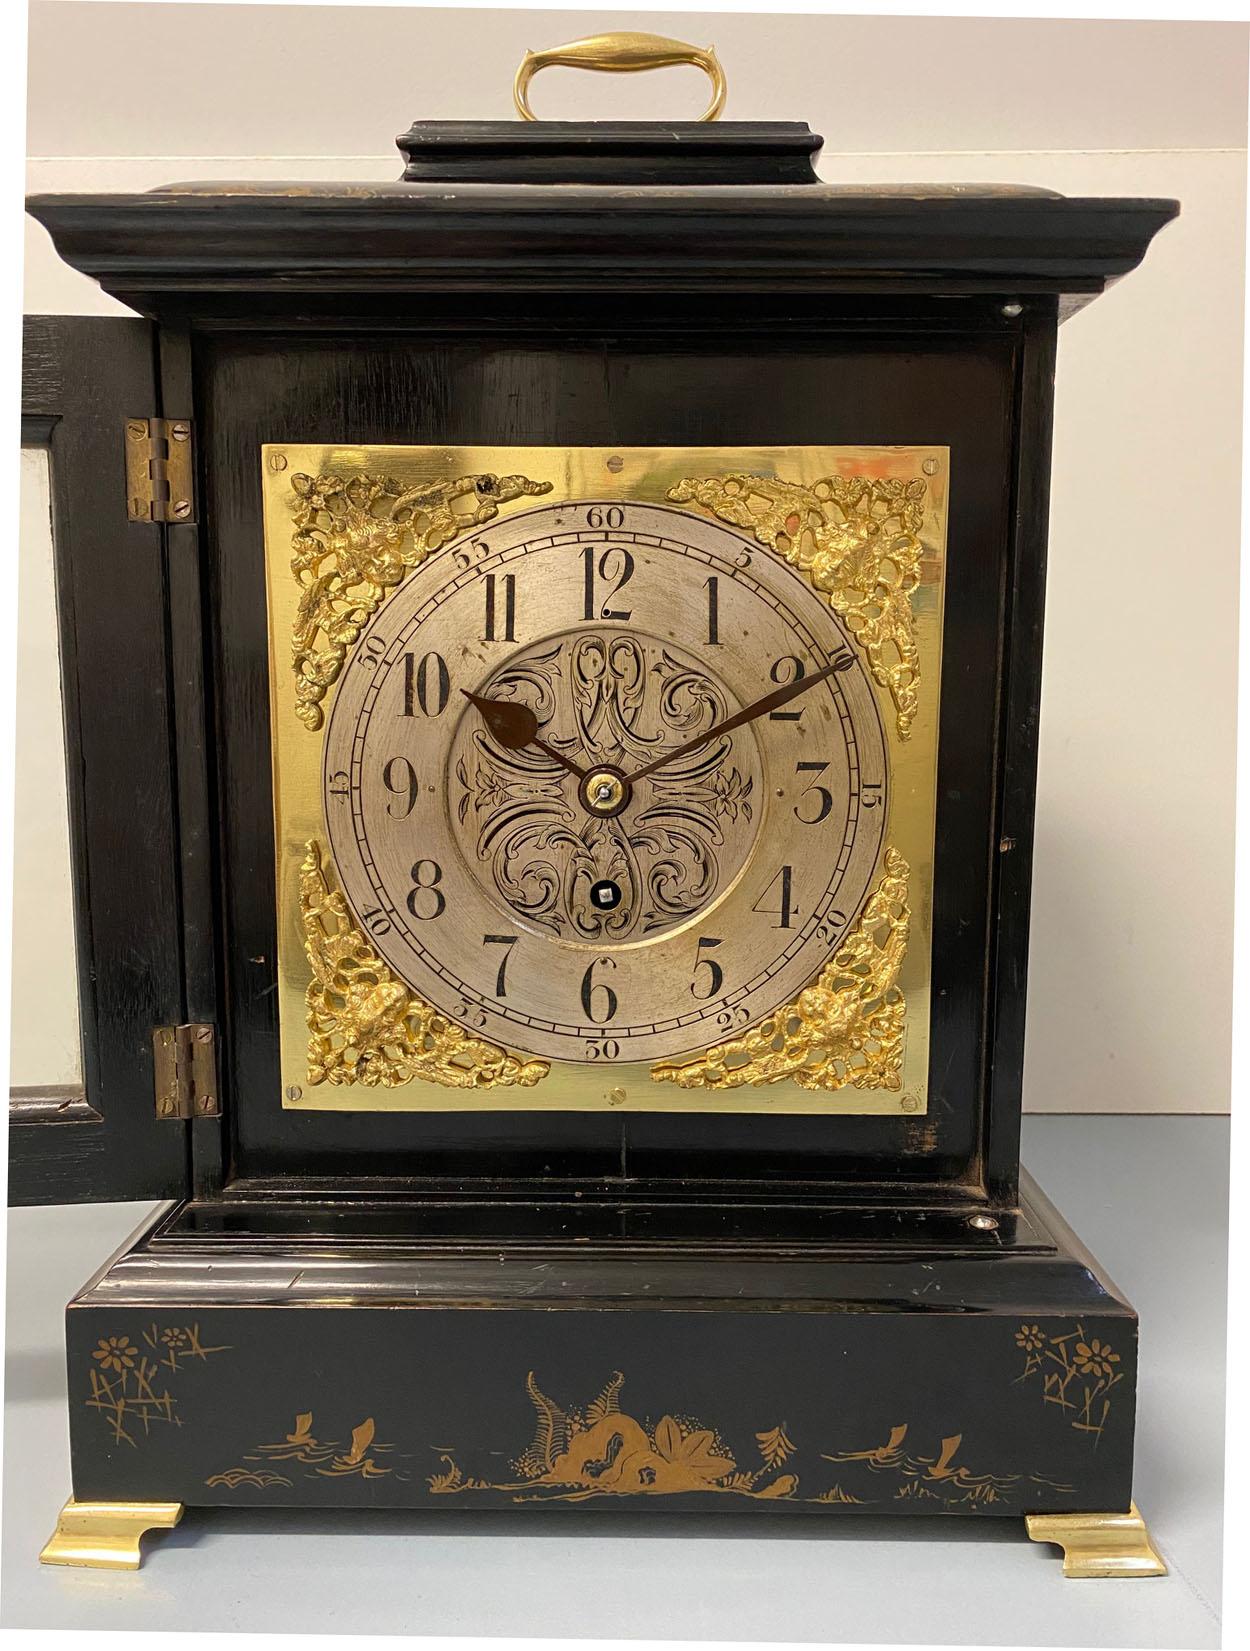 Eine feine Qualität Englisch George III Stil schwarz Chinoiserie Kaminsims Uhr, um 1880.

Das schwarz lackierte Holzgehäuse ist mit feinen Chinoiserie-Dekoren verziert, darunter Szenen mit Bäumen, Meer, Inseln, Booten, Vögeln und Blumen, mit